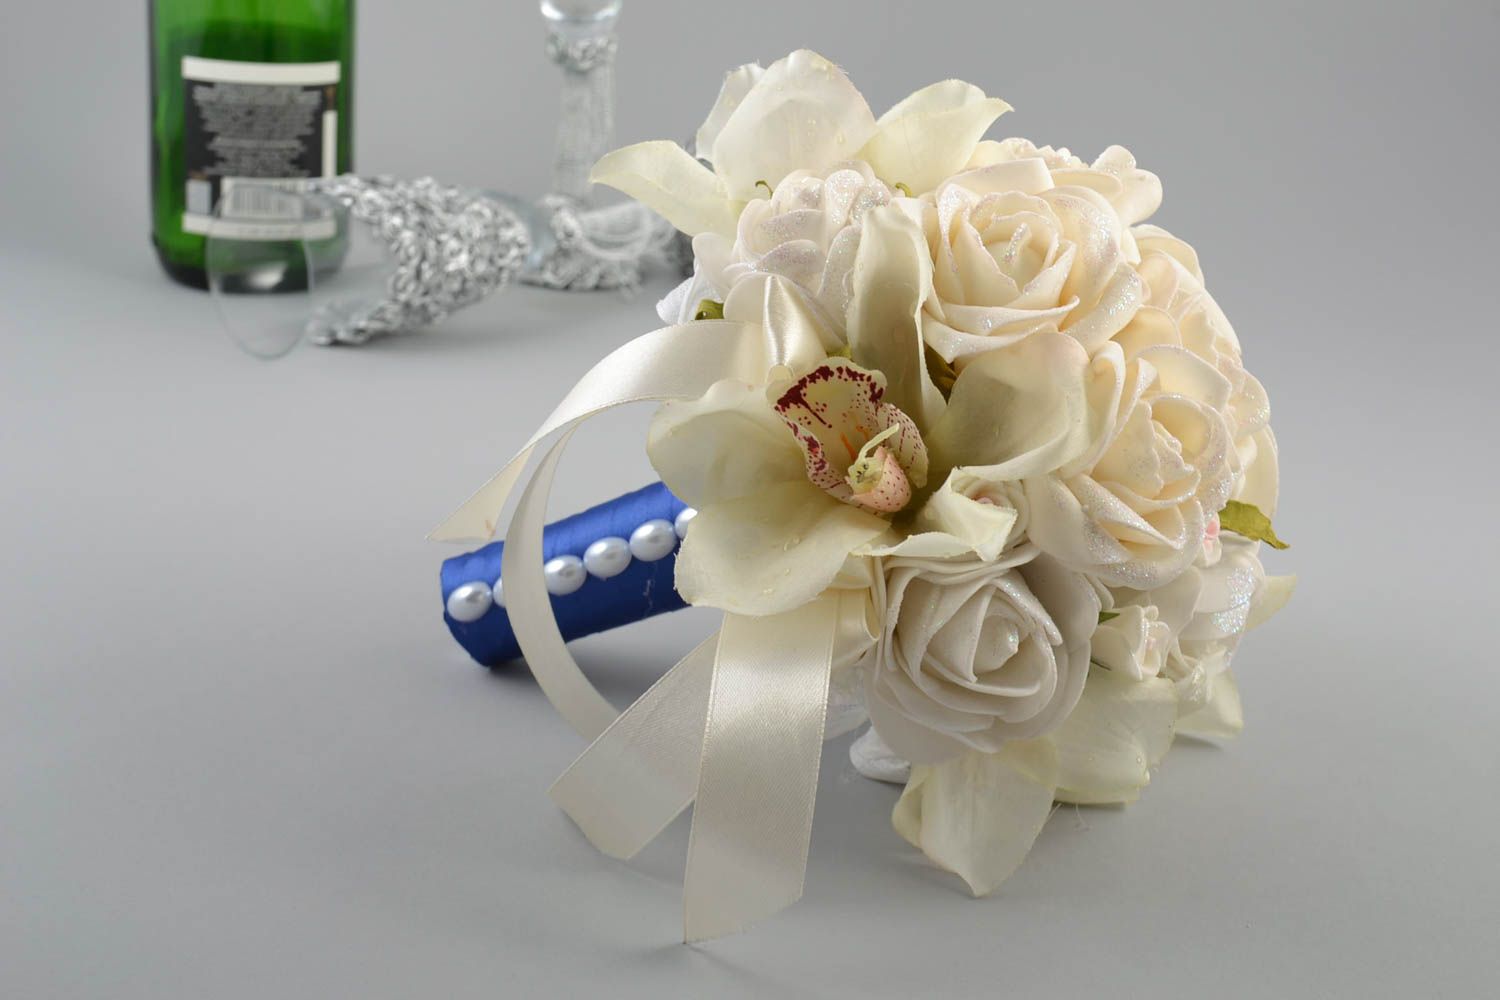 Свадебный букет из фоамирана белый на синей ножке красивый с лентами хэнд мейд фото 1